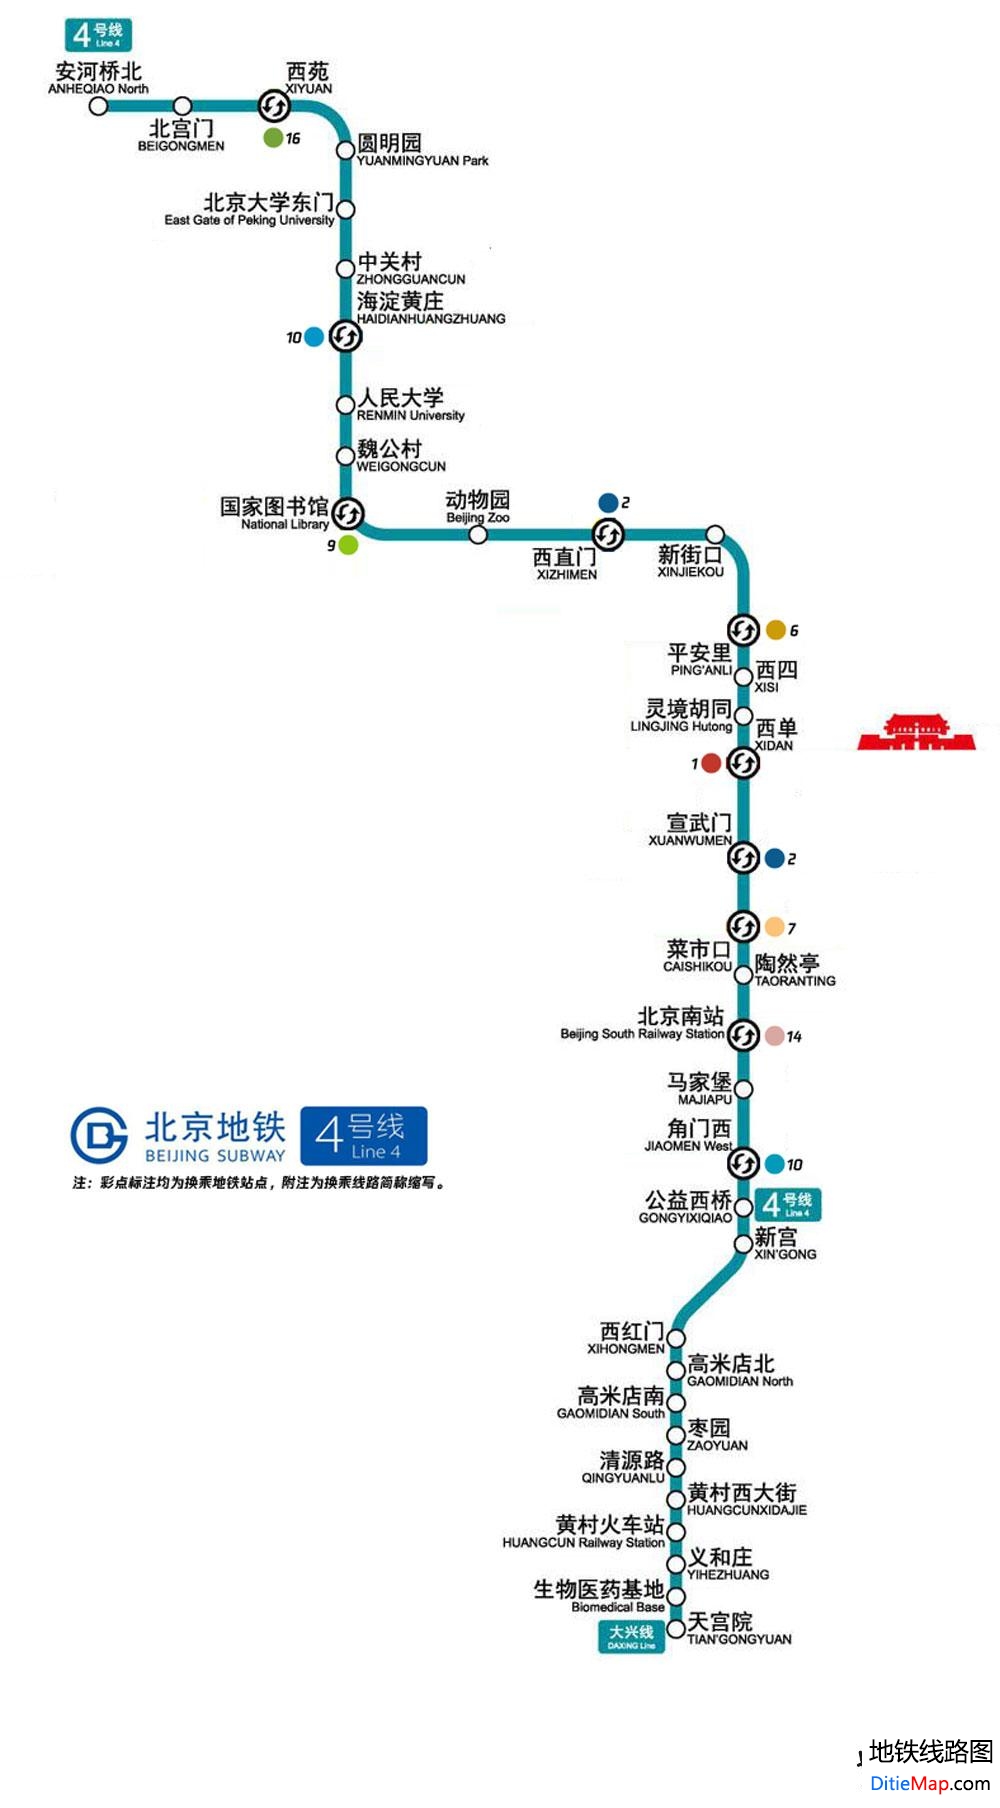 北京地铁4号线线路图 运营时间票价站点 查询下载 北京地铁4号线查询 北京地铁4号线运营时间 北京地铁4号线线路图 北京地铁四号线 北京地铁4号线 北京地铁线路图  第2张